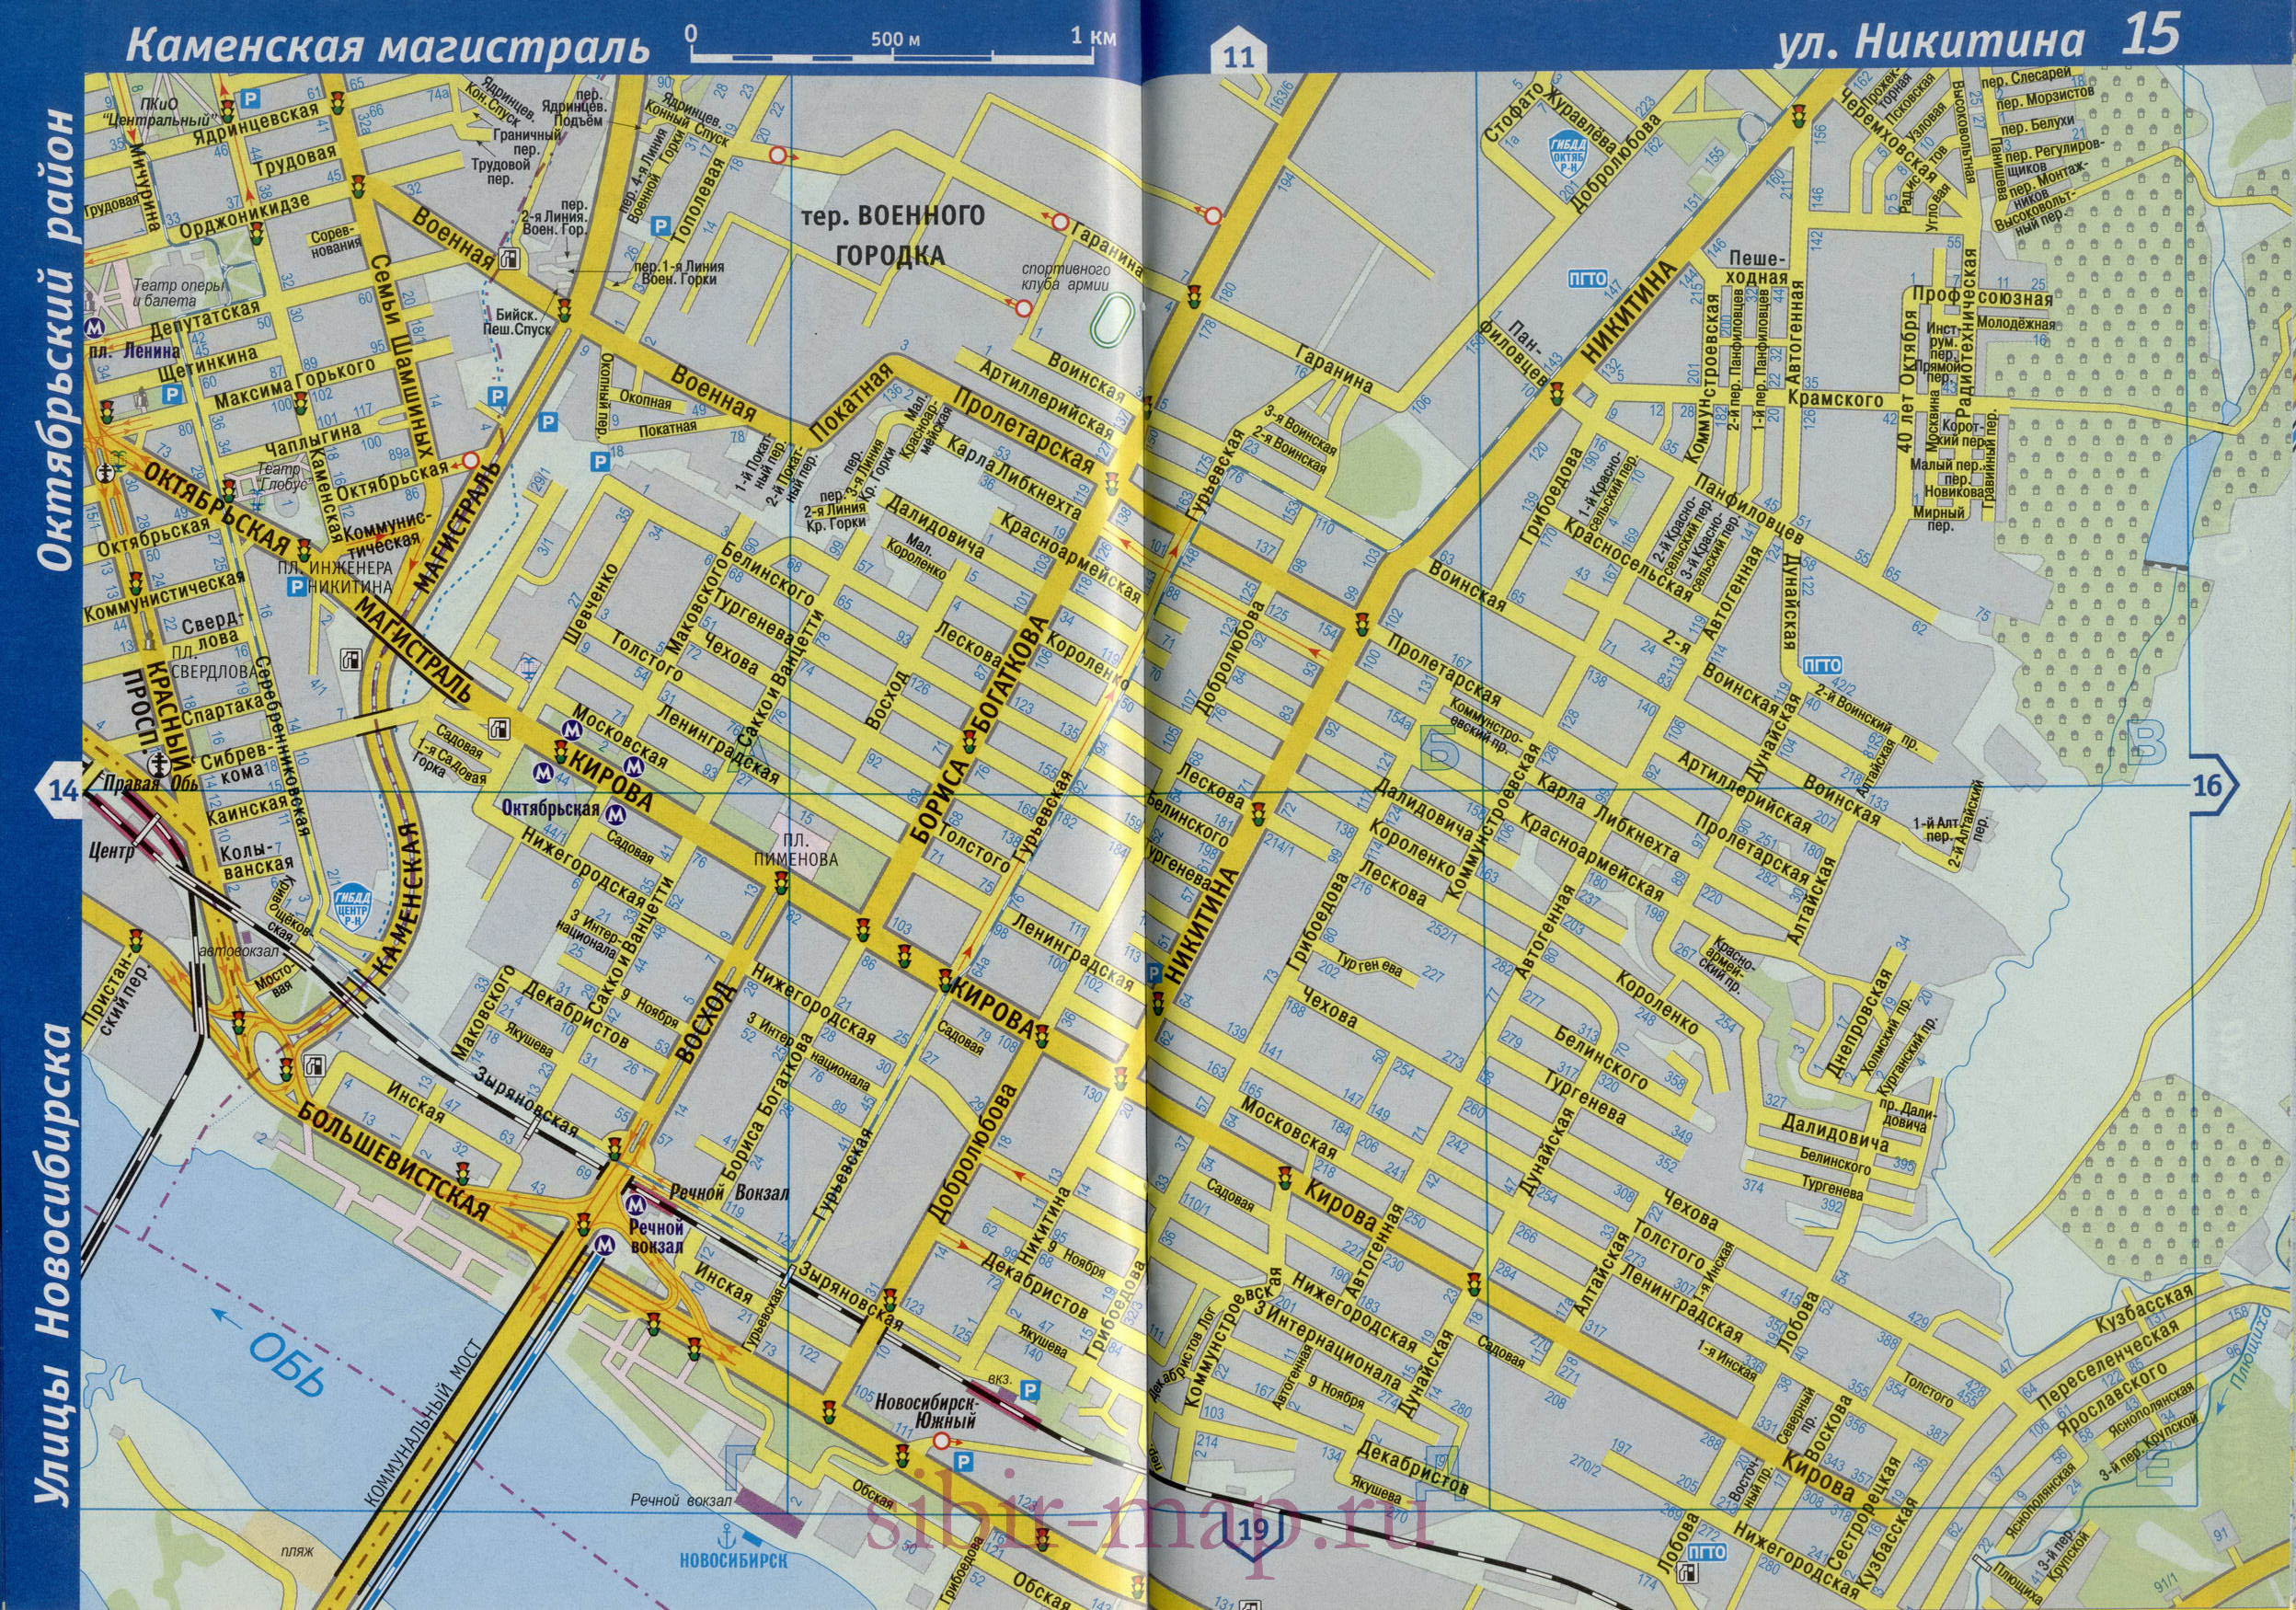 Карта Центрального района города Новосибирска. Крупномасштабная карта - Центральный р-н с названиями улиц и номерами домов, B1 - 